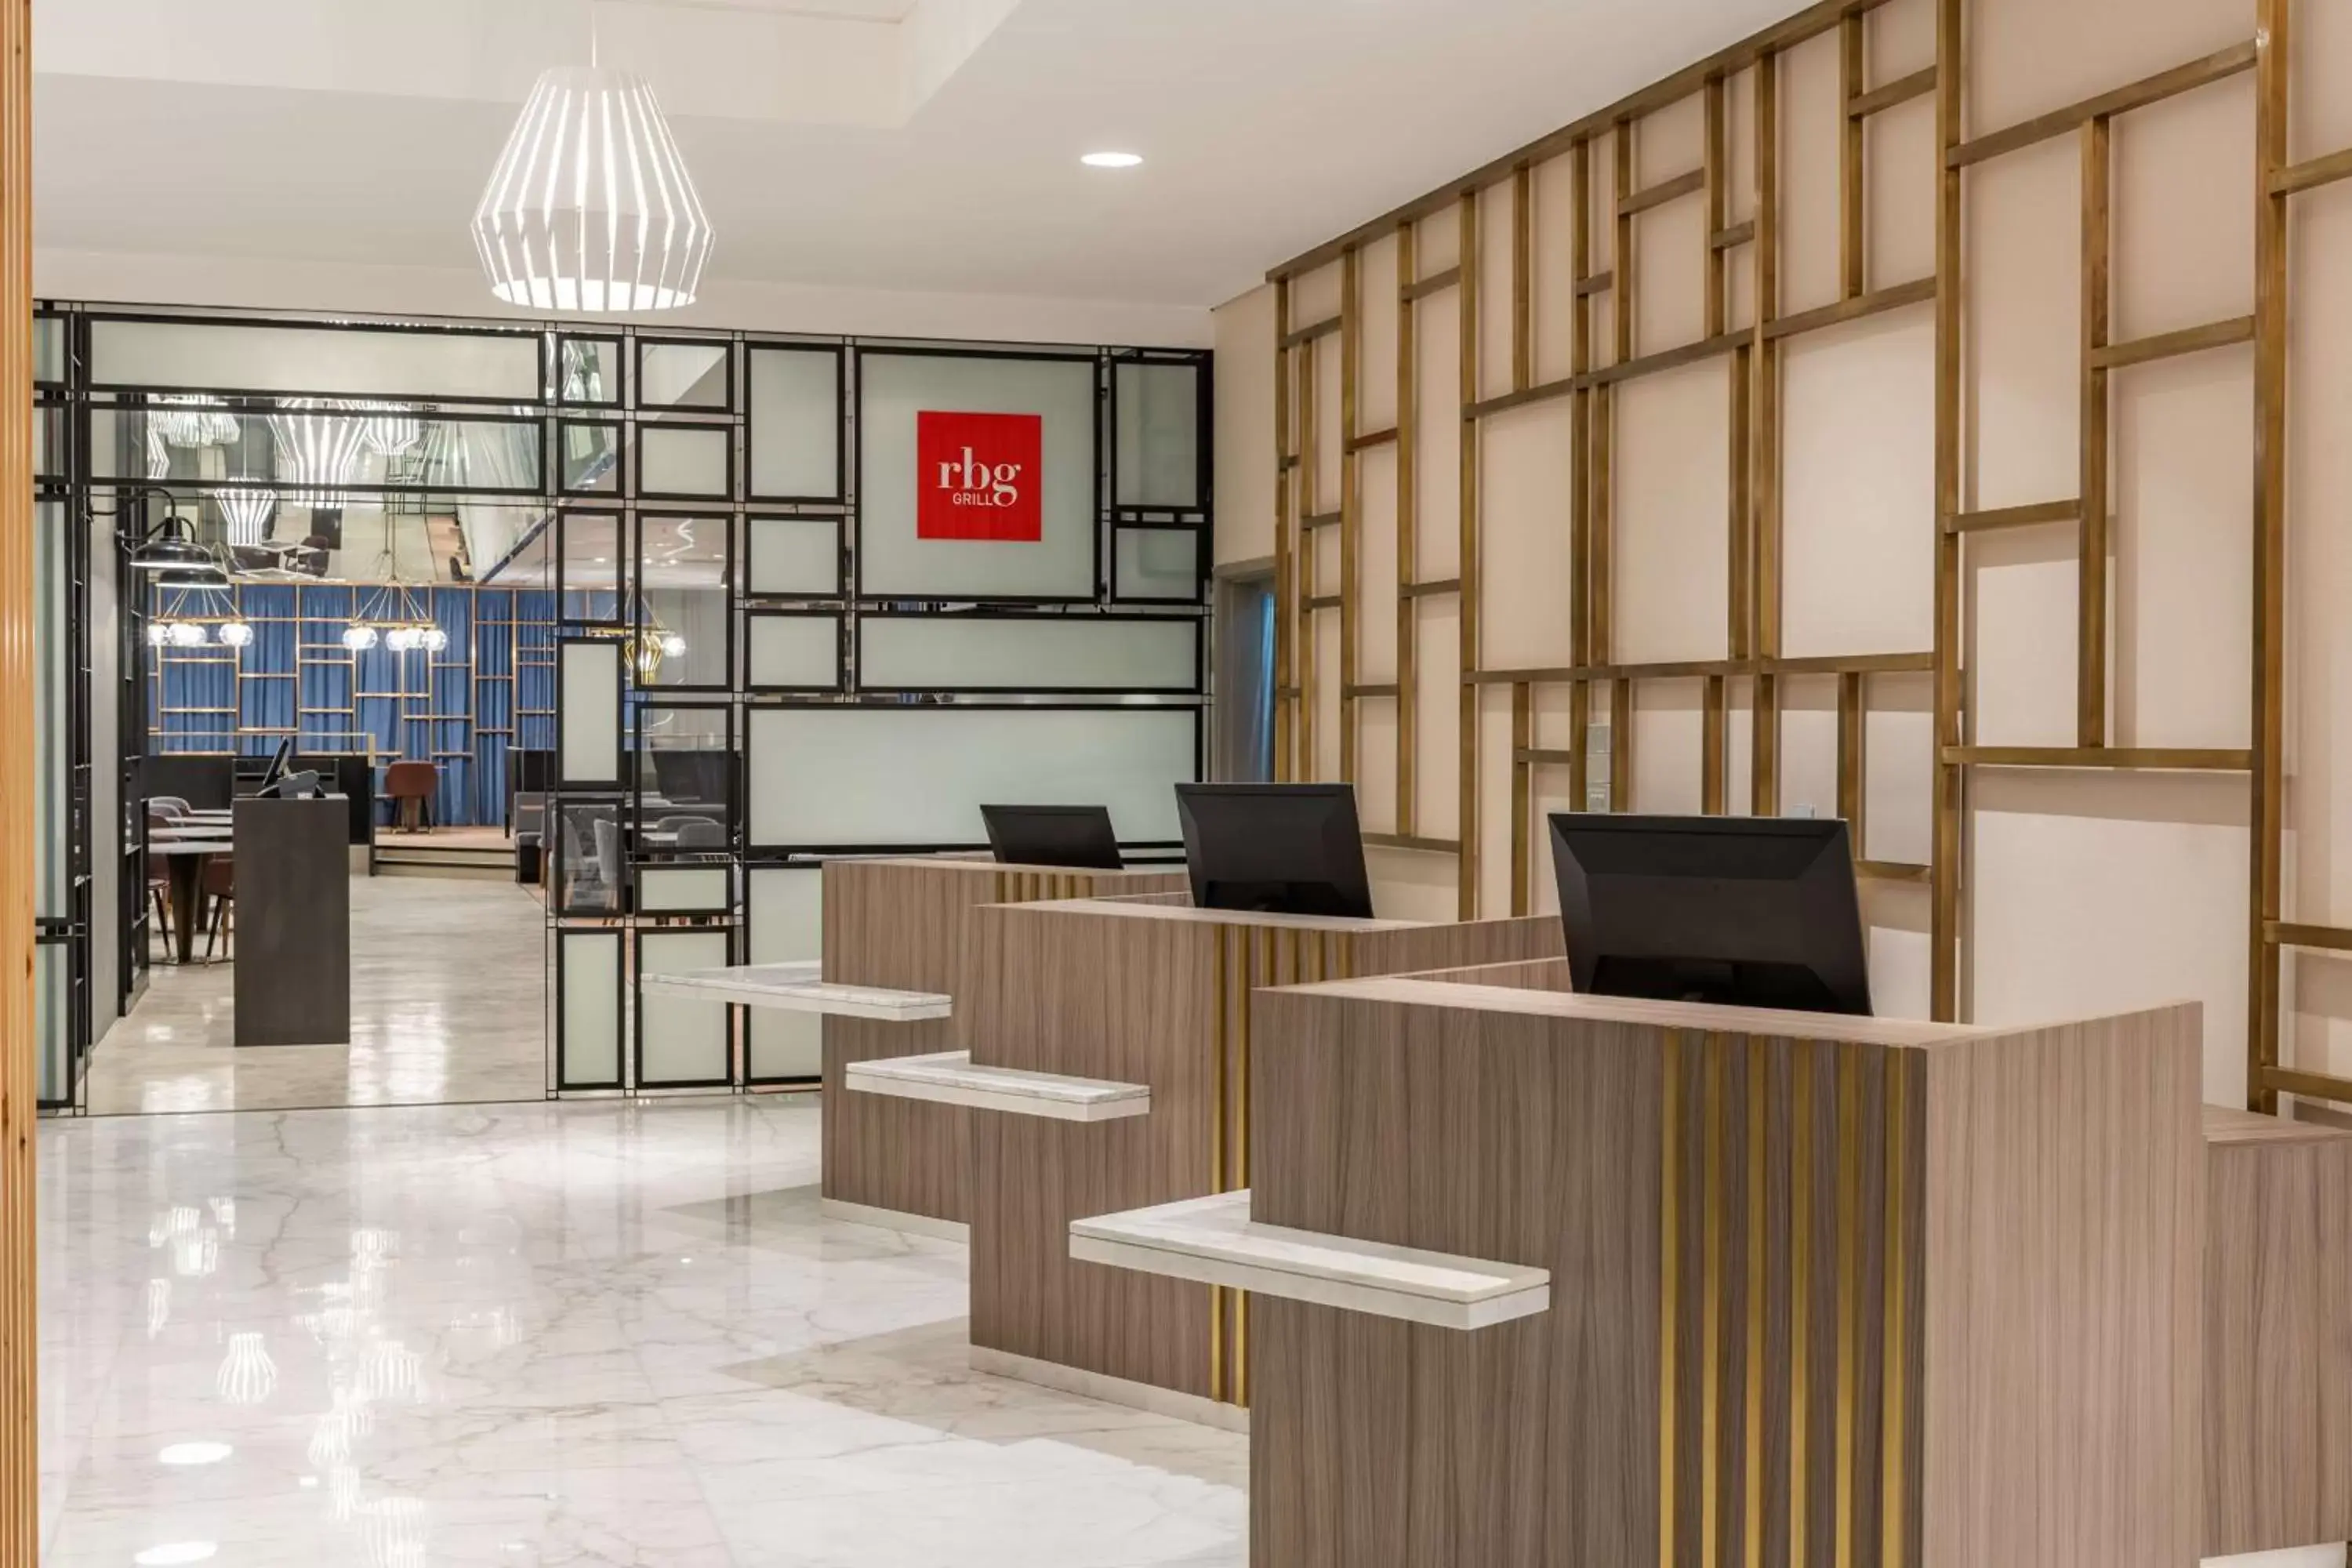 Lobby or reception, Lobby/Reception in Park Inn by Radisson, Riyadh